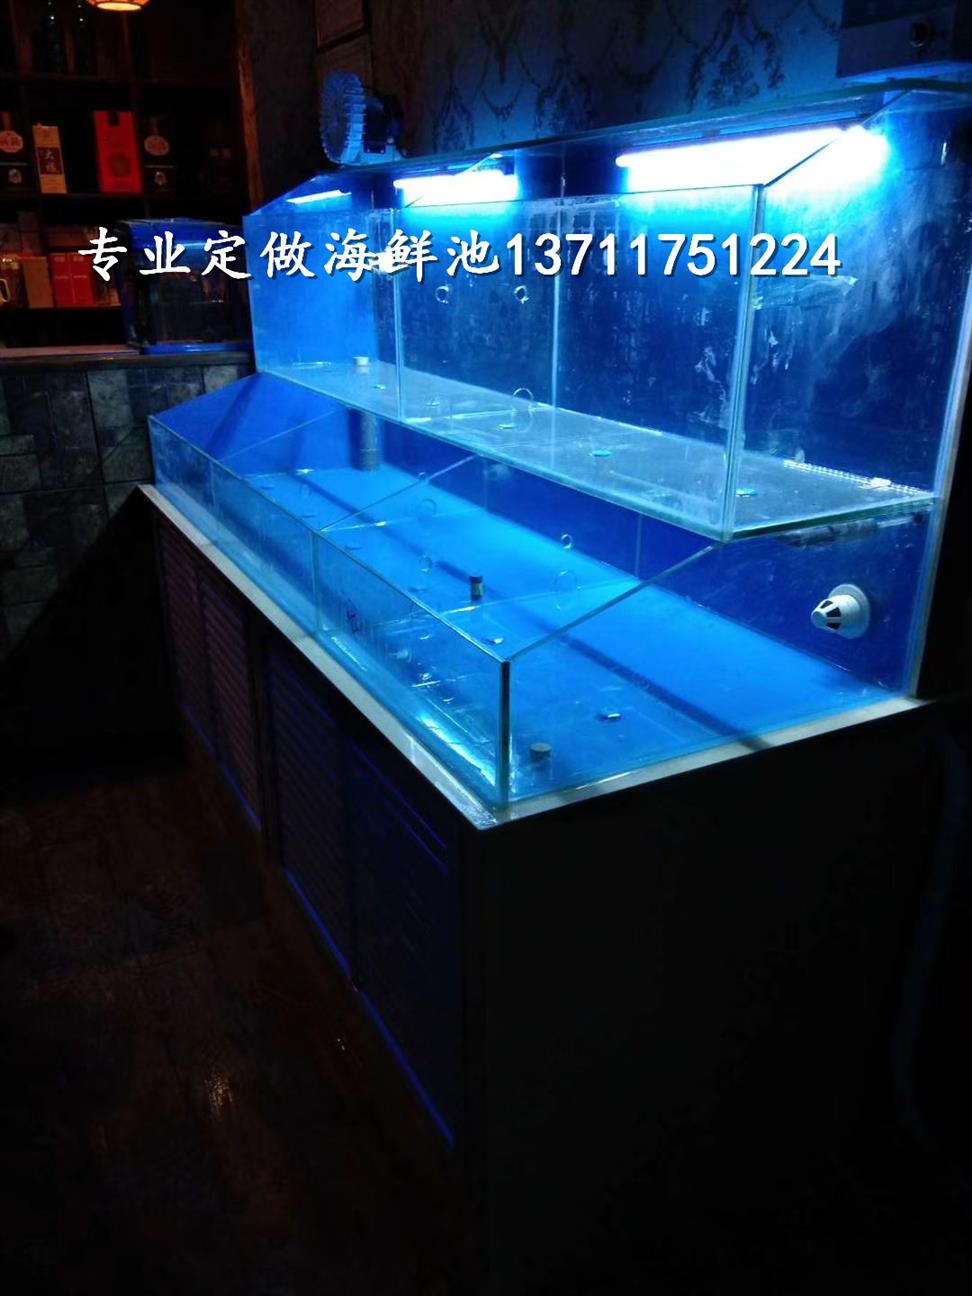 广州登峰玻璃海鲜池设计